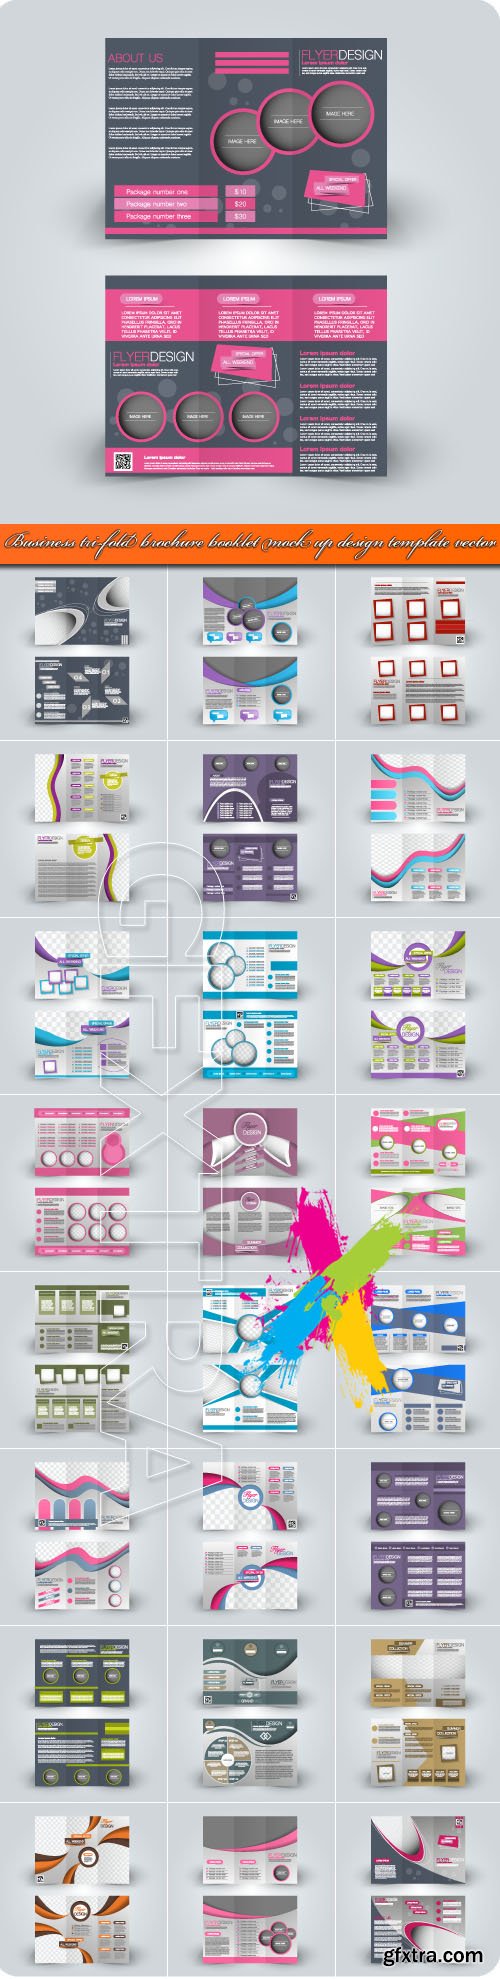 Business tri-fold brochure booklet mock up design template vector